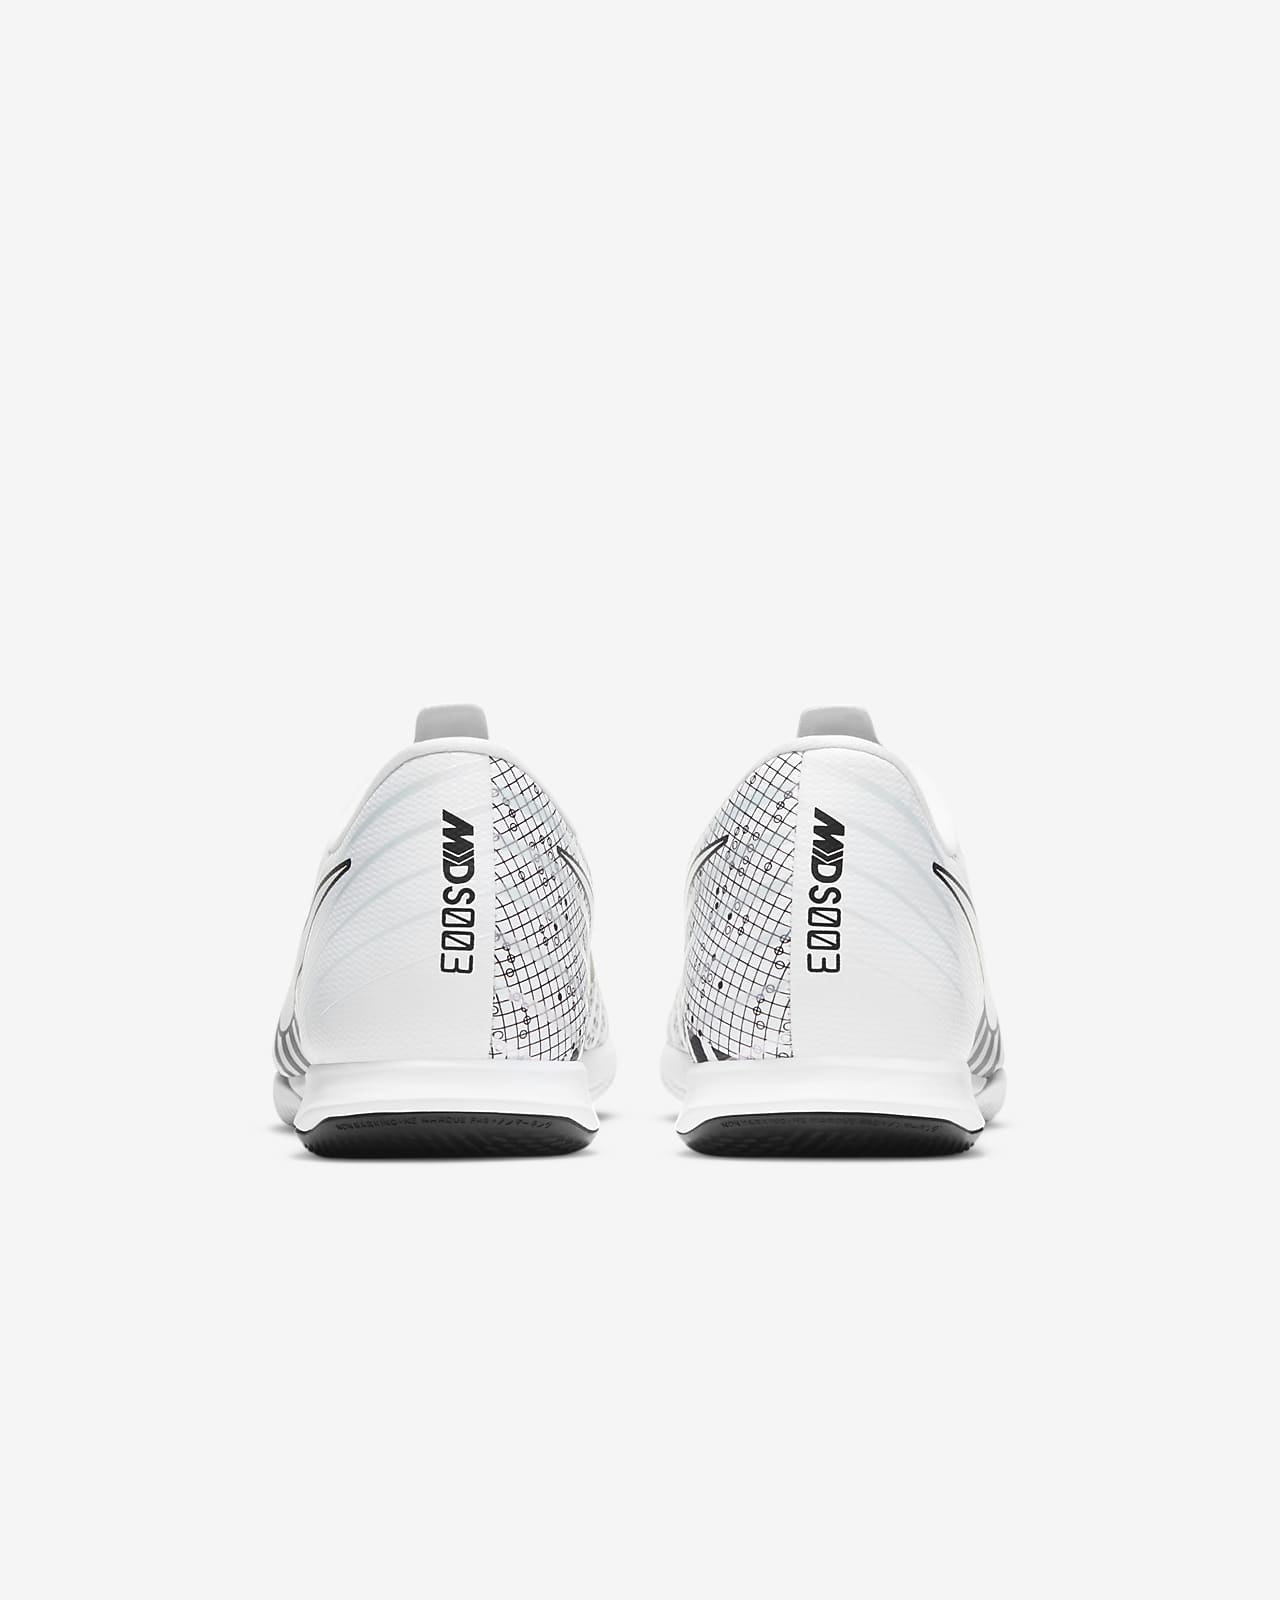 nike vapor indoor soccer shoes